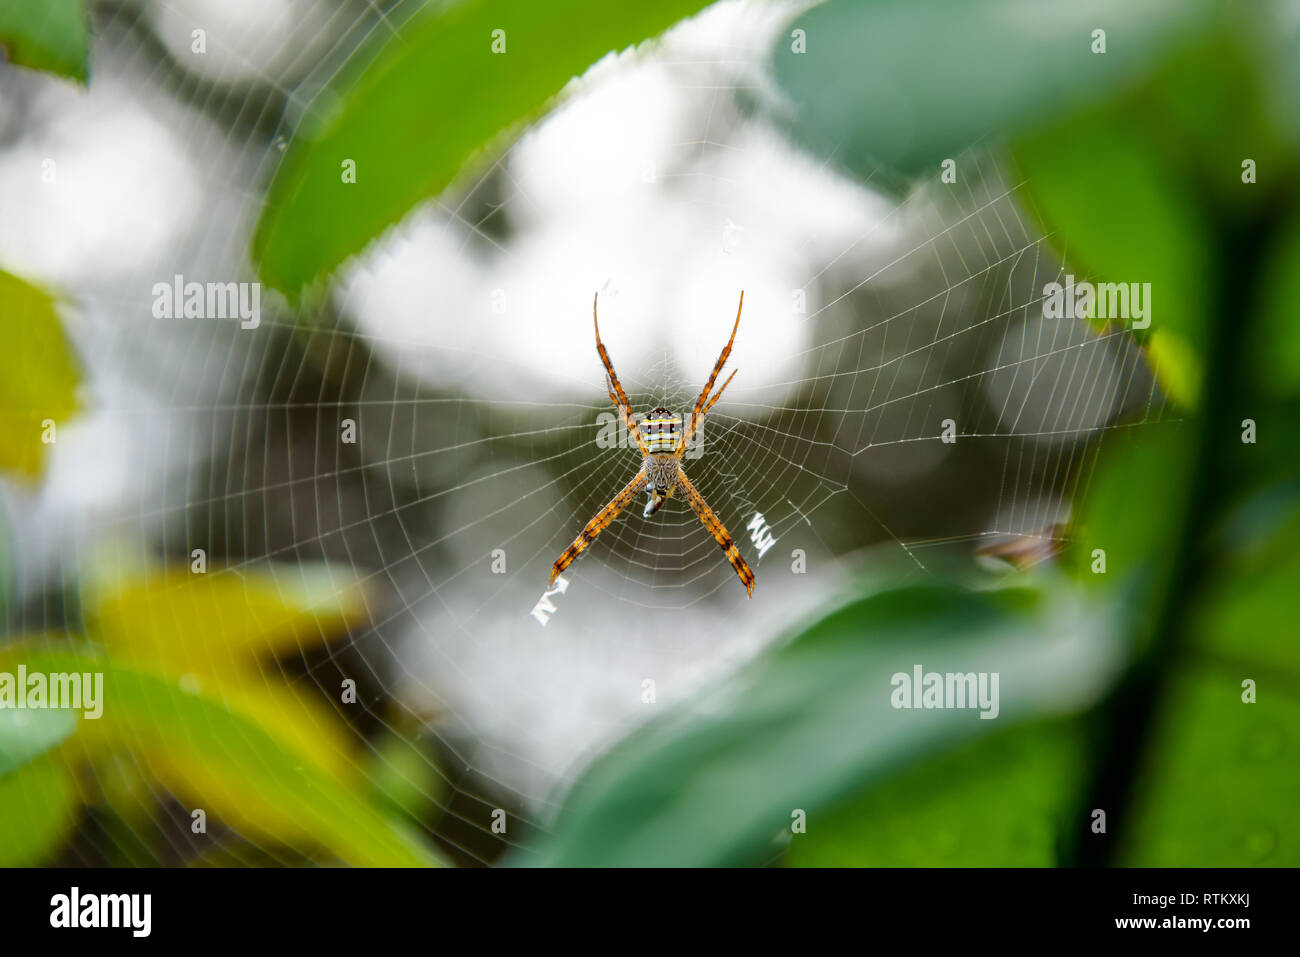 Weibliche Argiope Keyserlingi oder St. Andrew's Cross Spider ist eine häufige Arten von Orb-Web spider Beutefang im Web, in den Wald von thailan Stockfoto